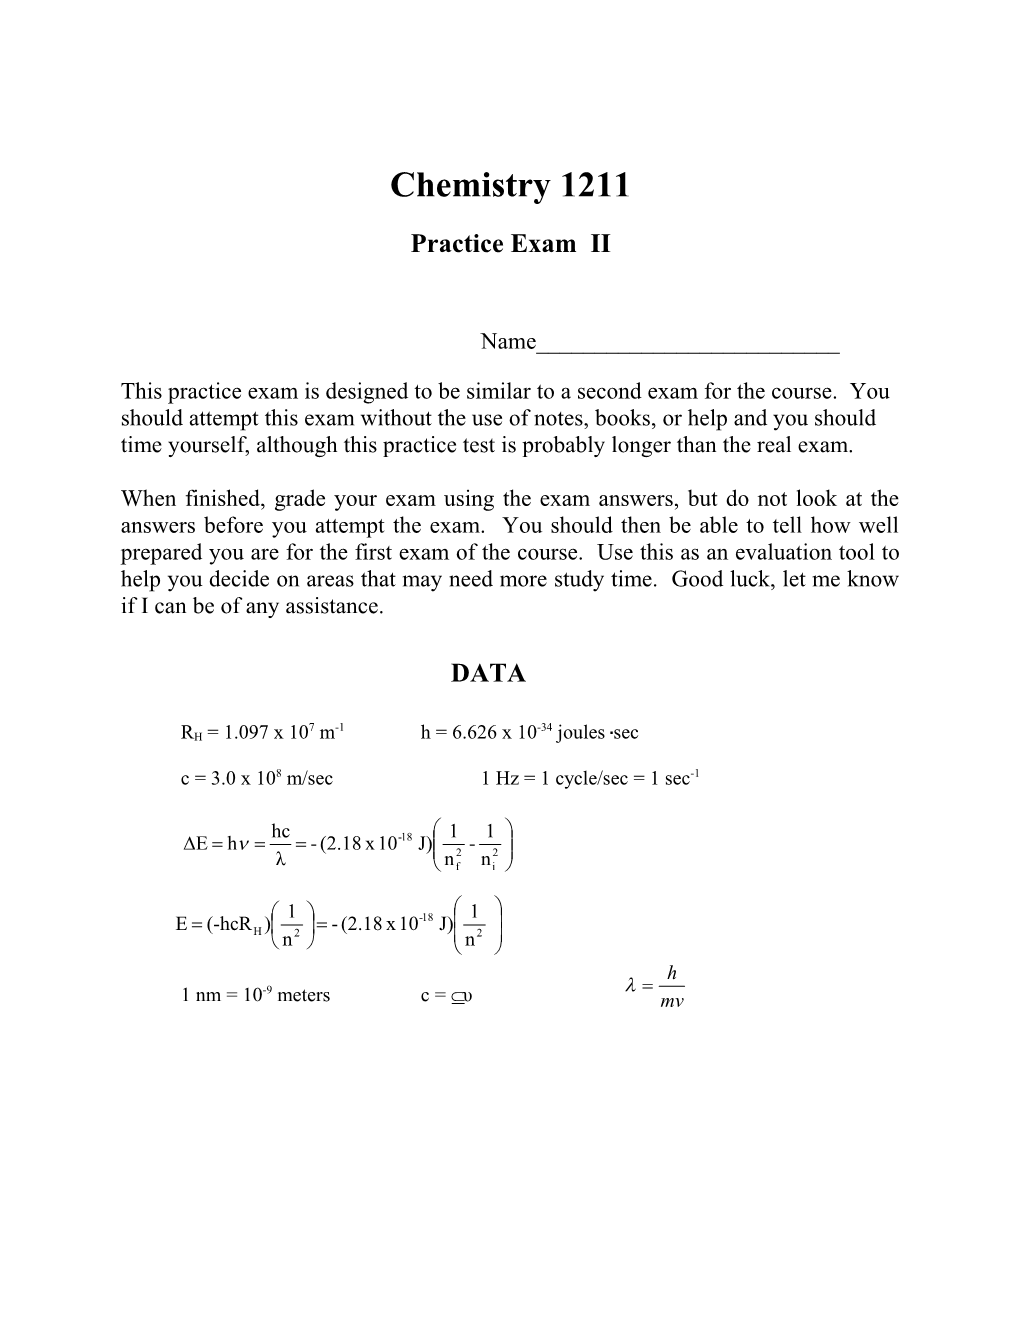 Chemistry 1211 Practice Exam II Page 9